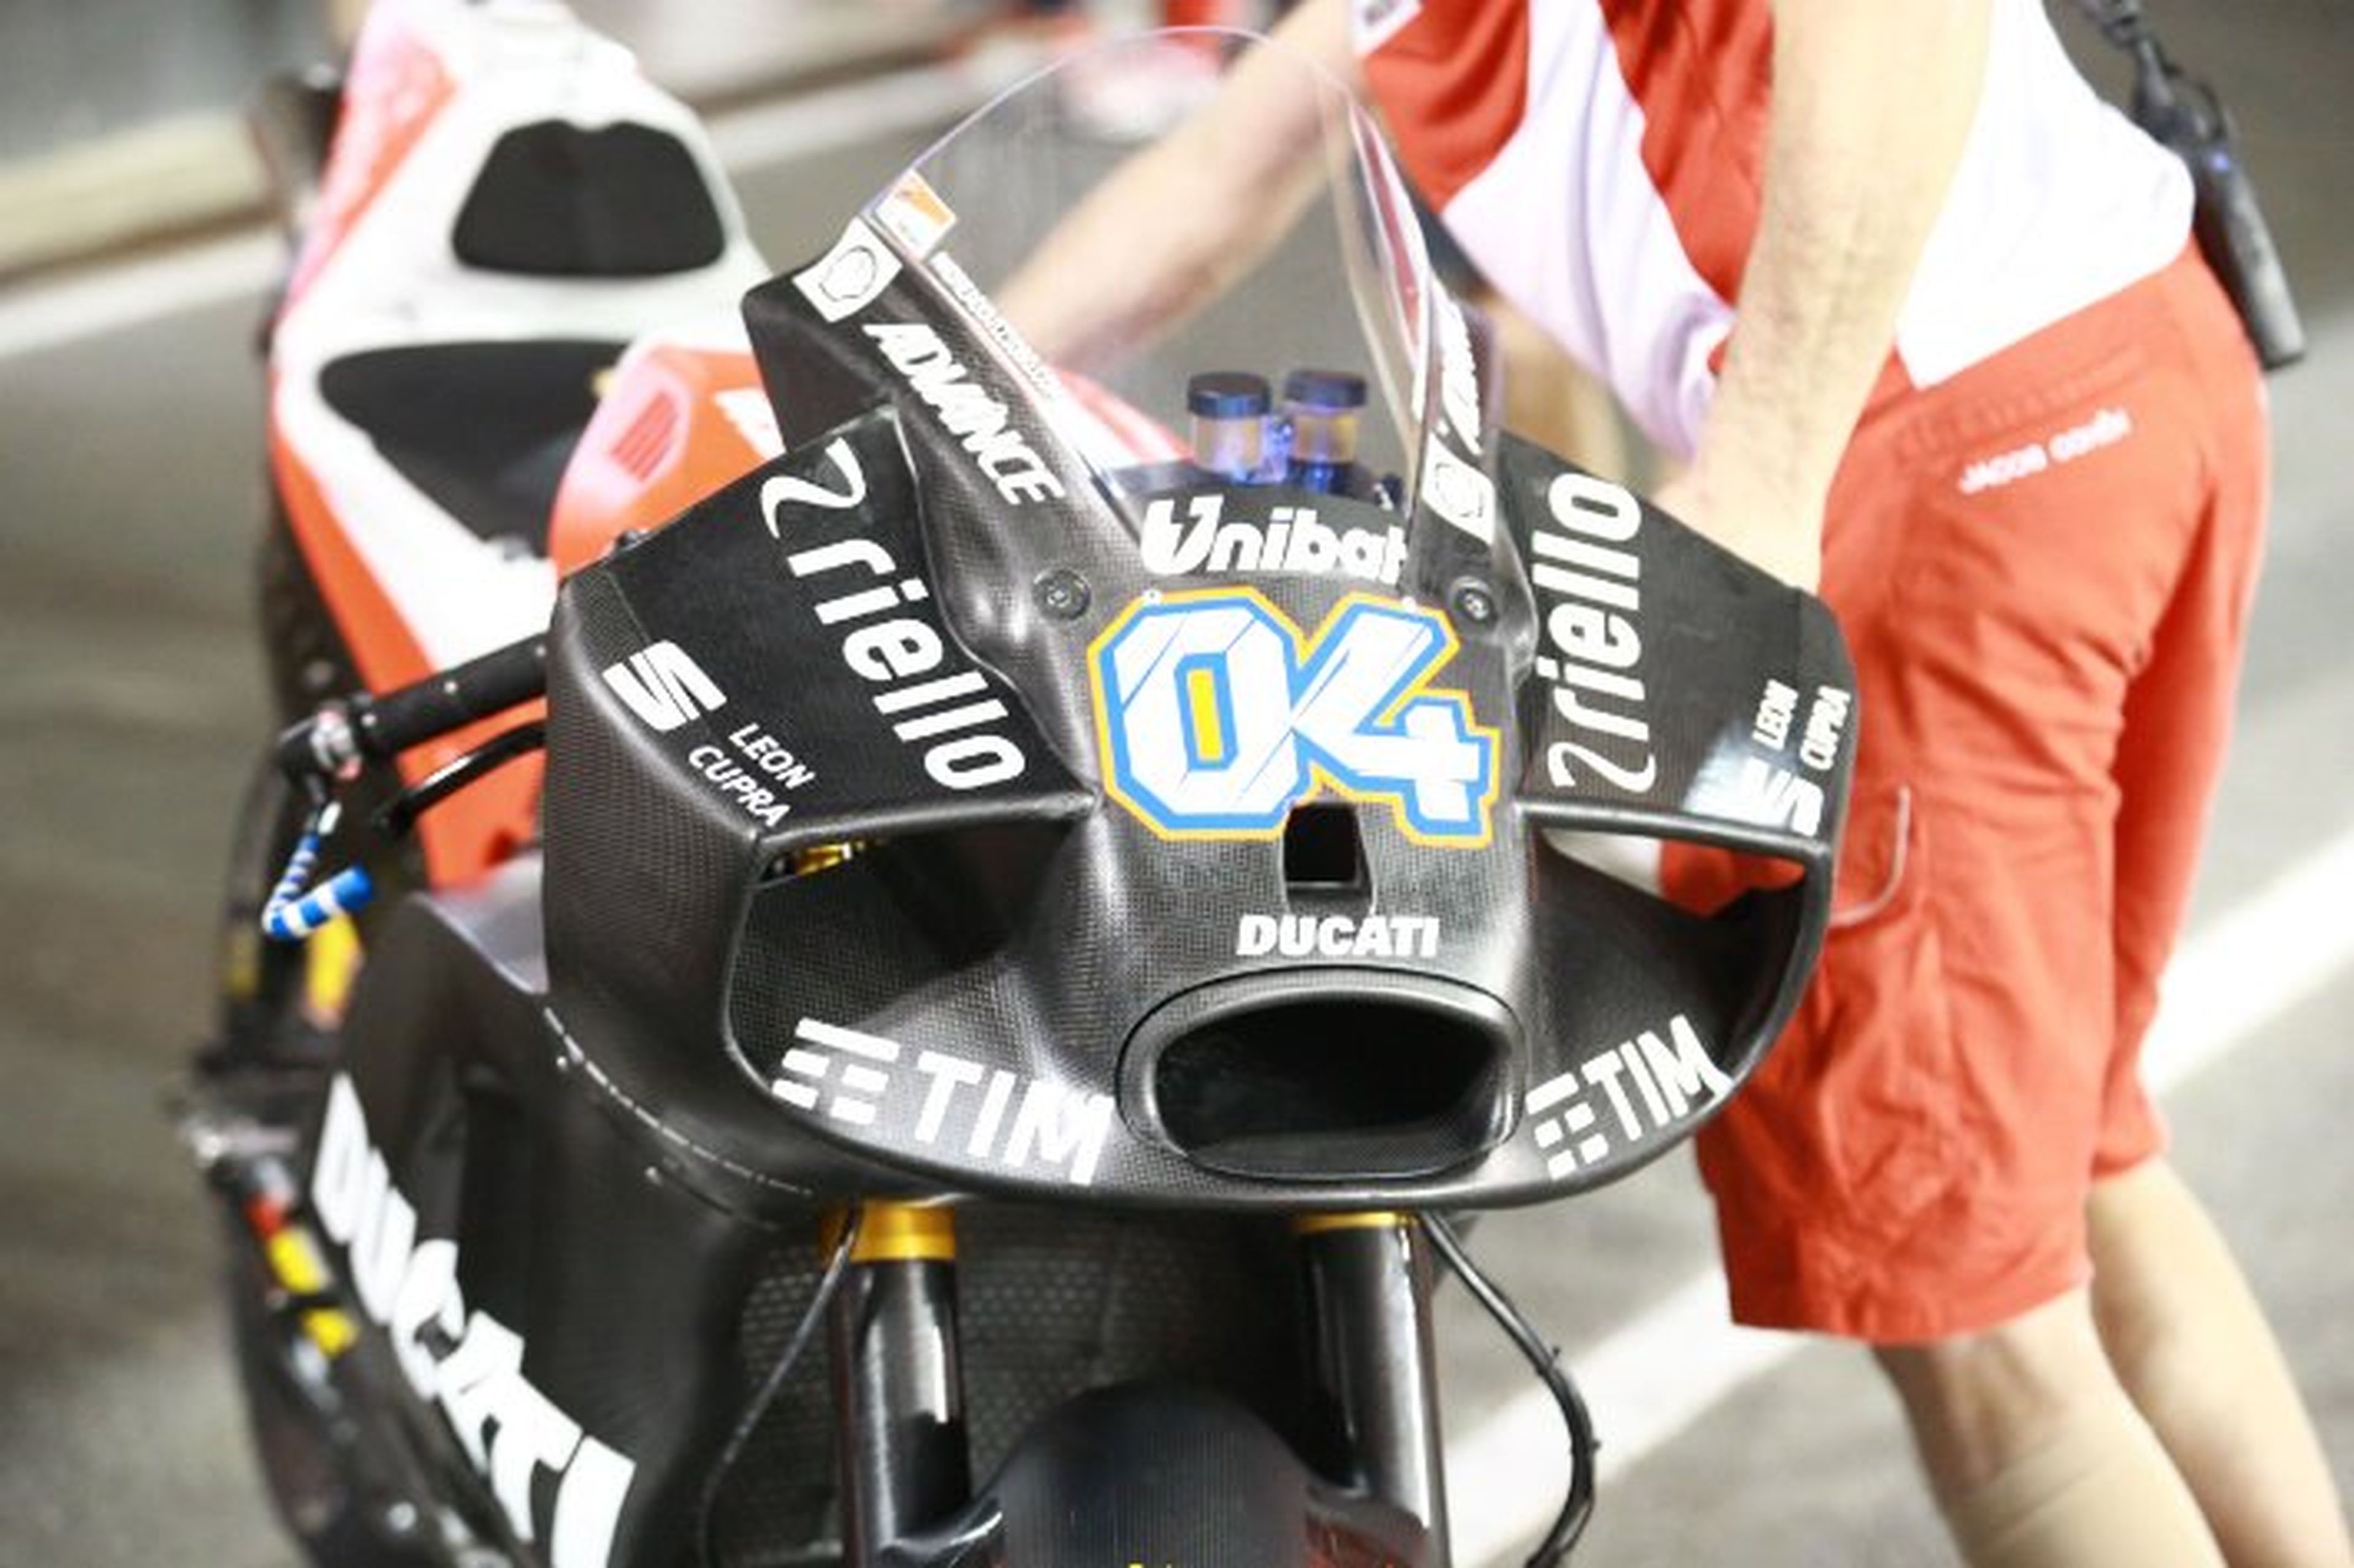 Ducati muestra su nuevo y monstruoso carenado en Qatar